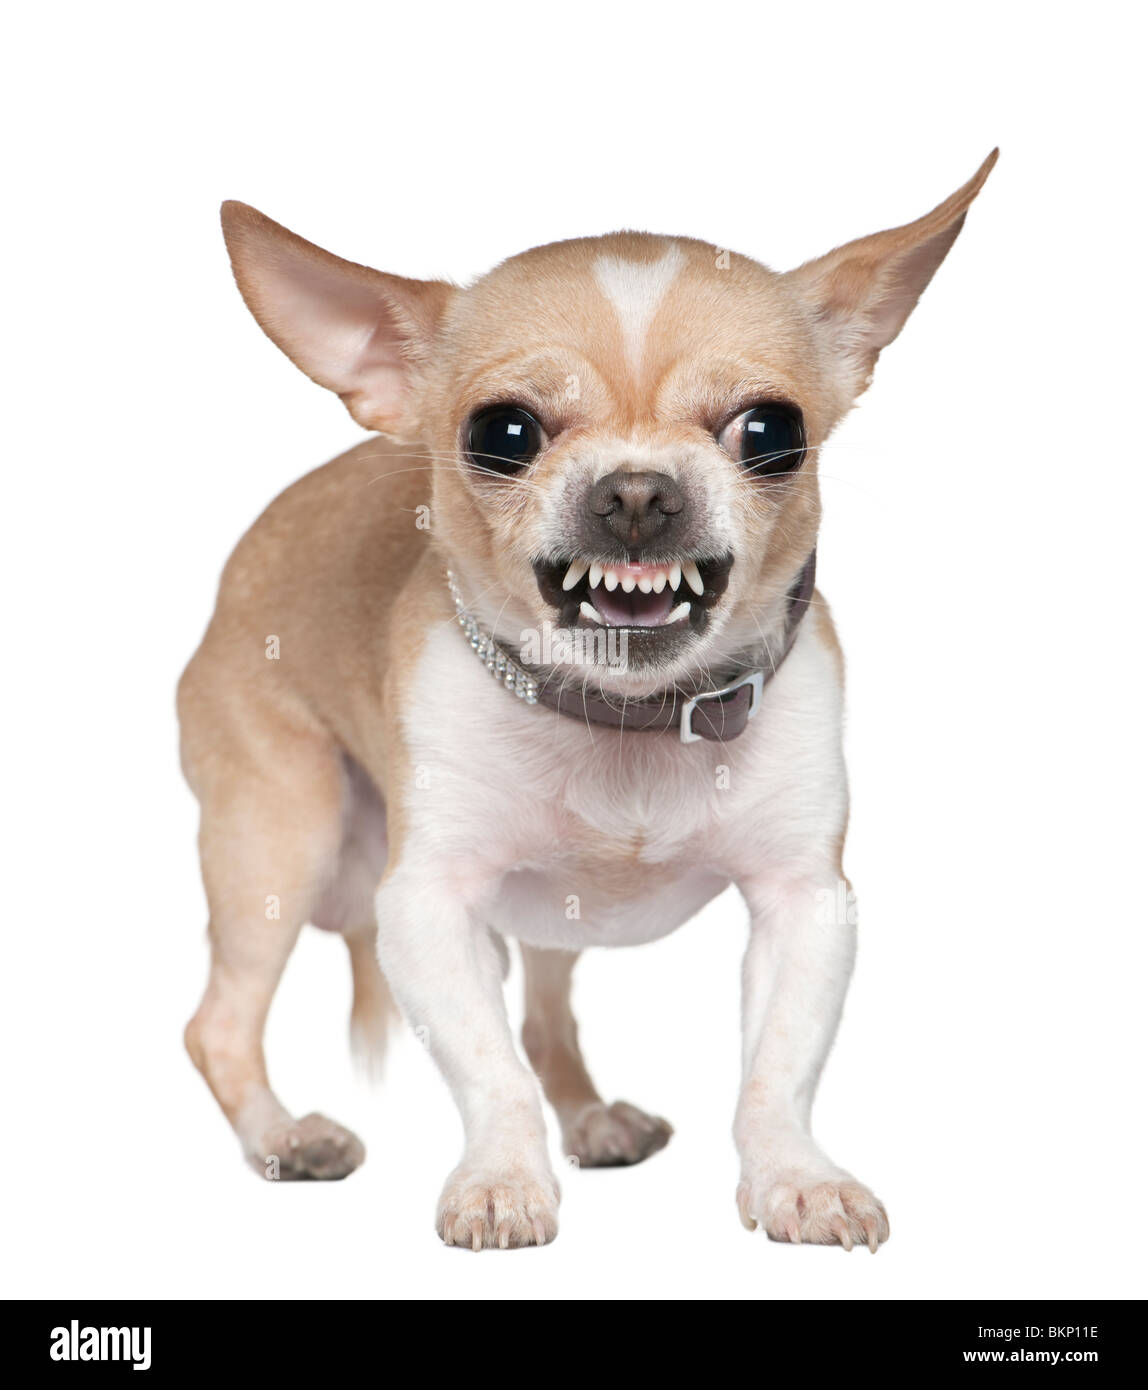 Arrabbiato Chihuahua ringhiando, 2 anni, di fronte a uno sfondo bianco Foto Stock